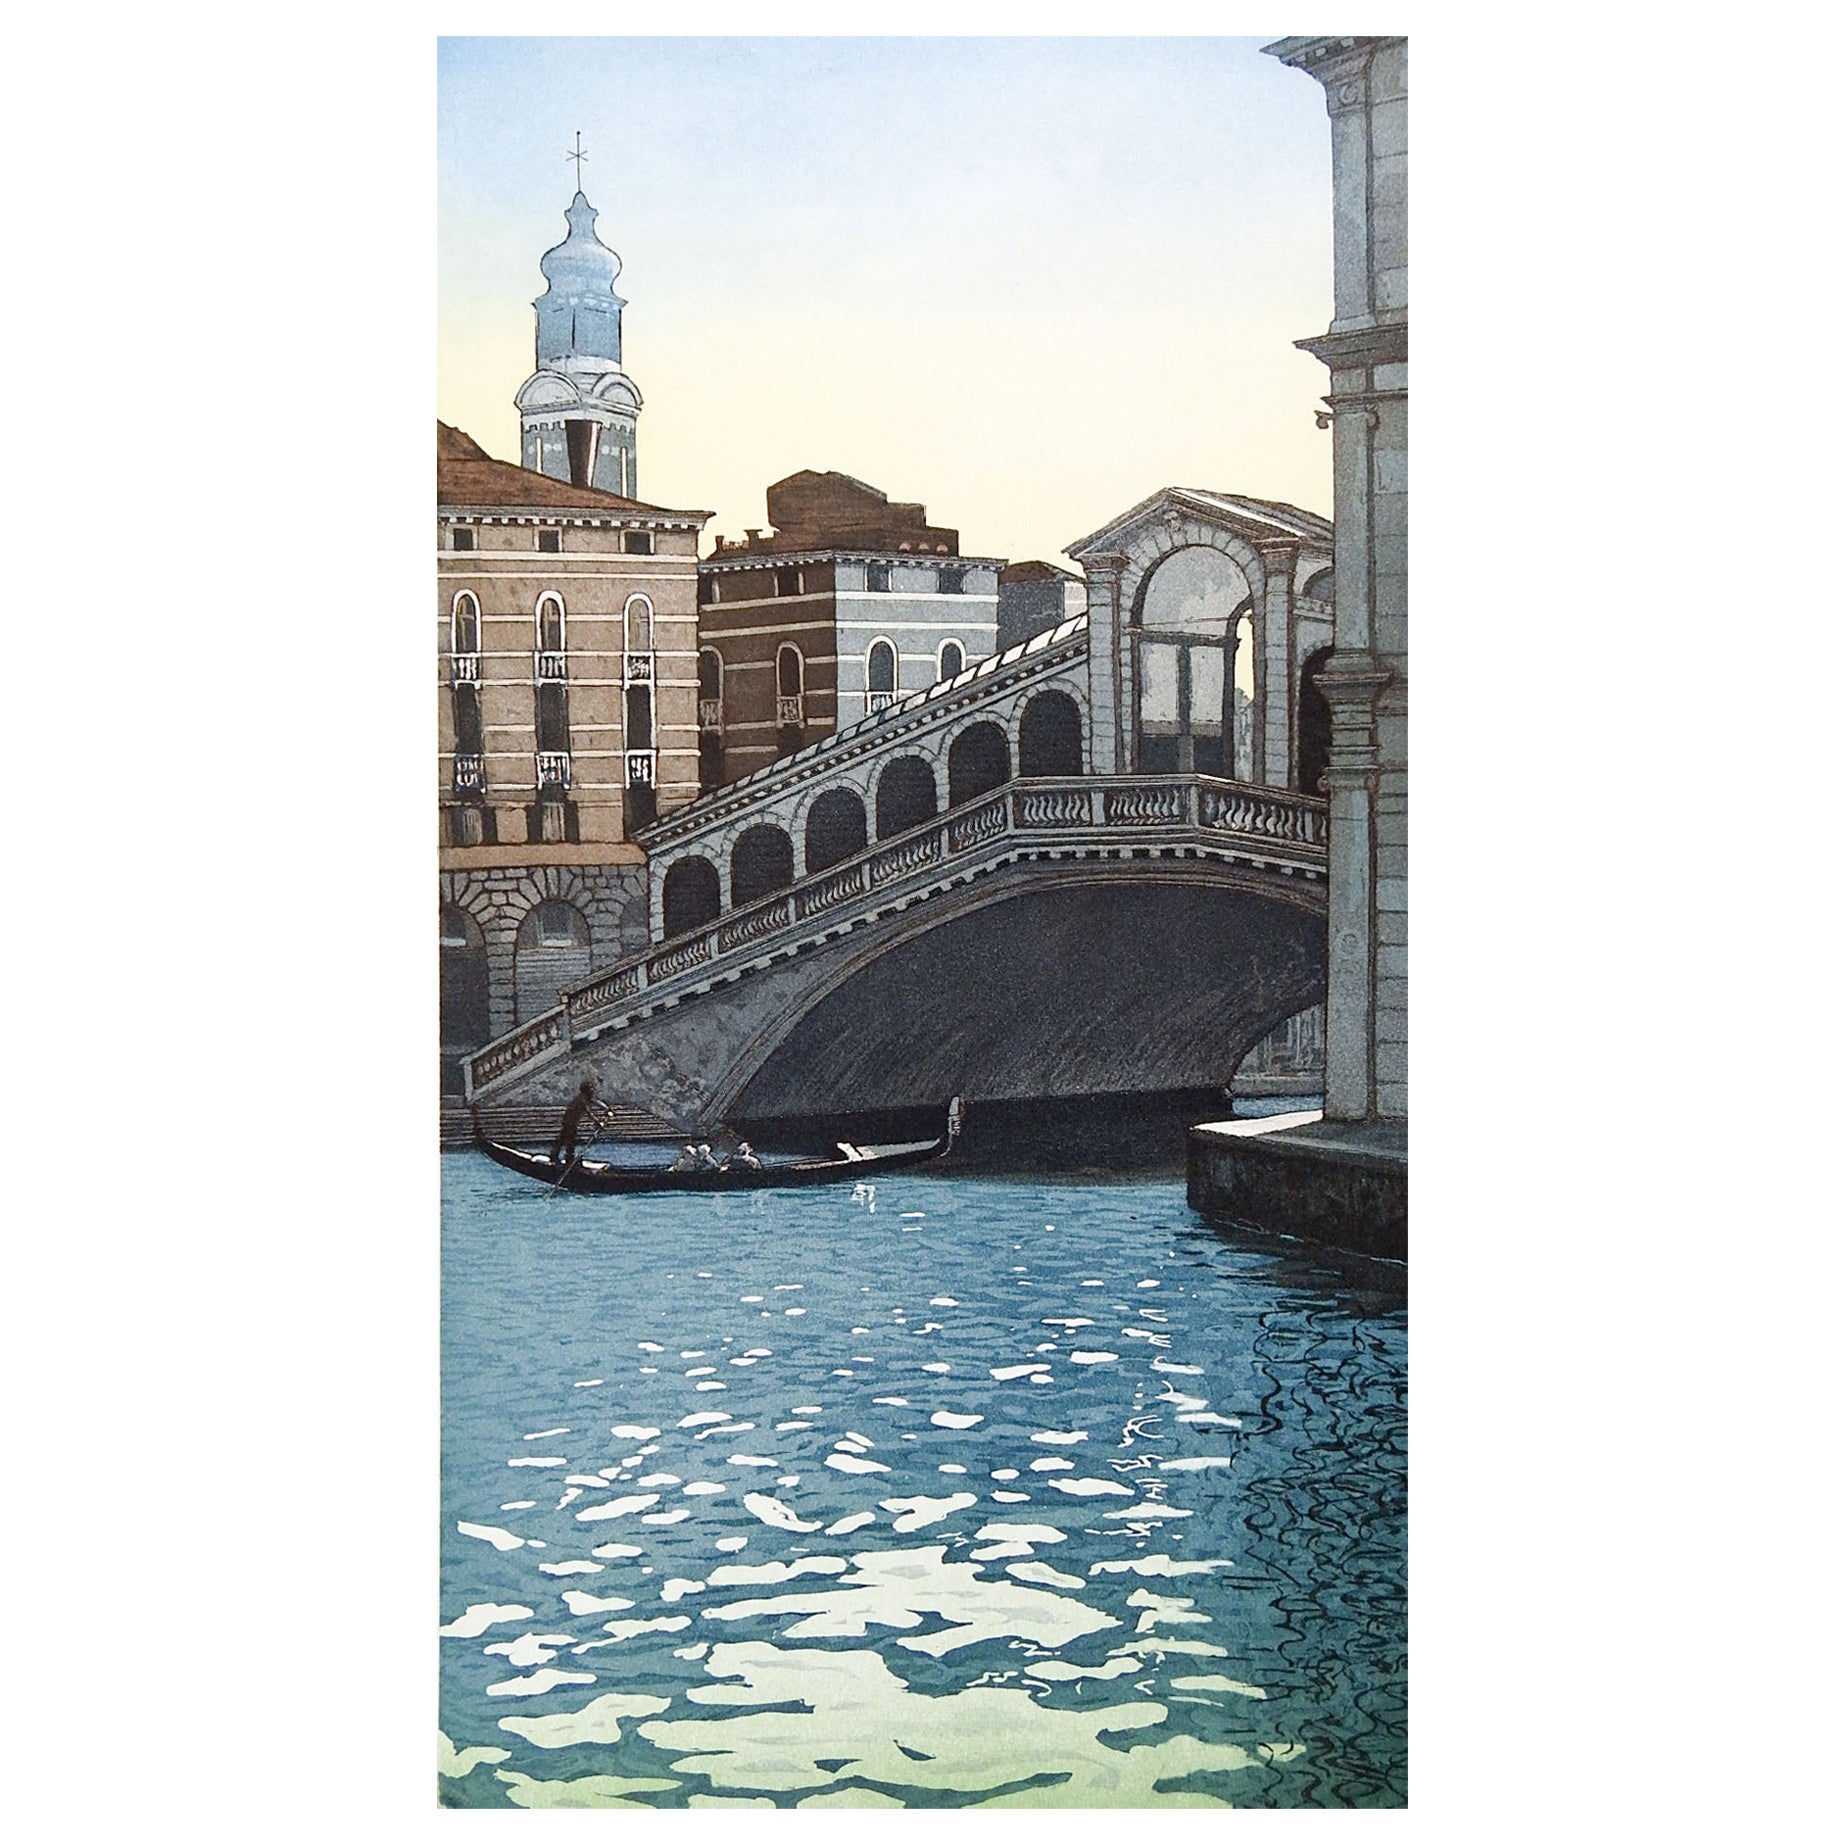  Rialto-Brücke in Venedig, Italien  Ätzen